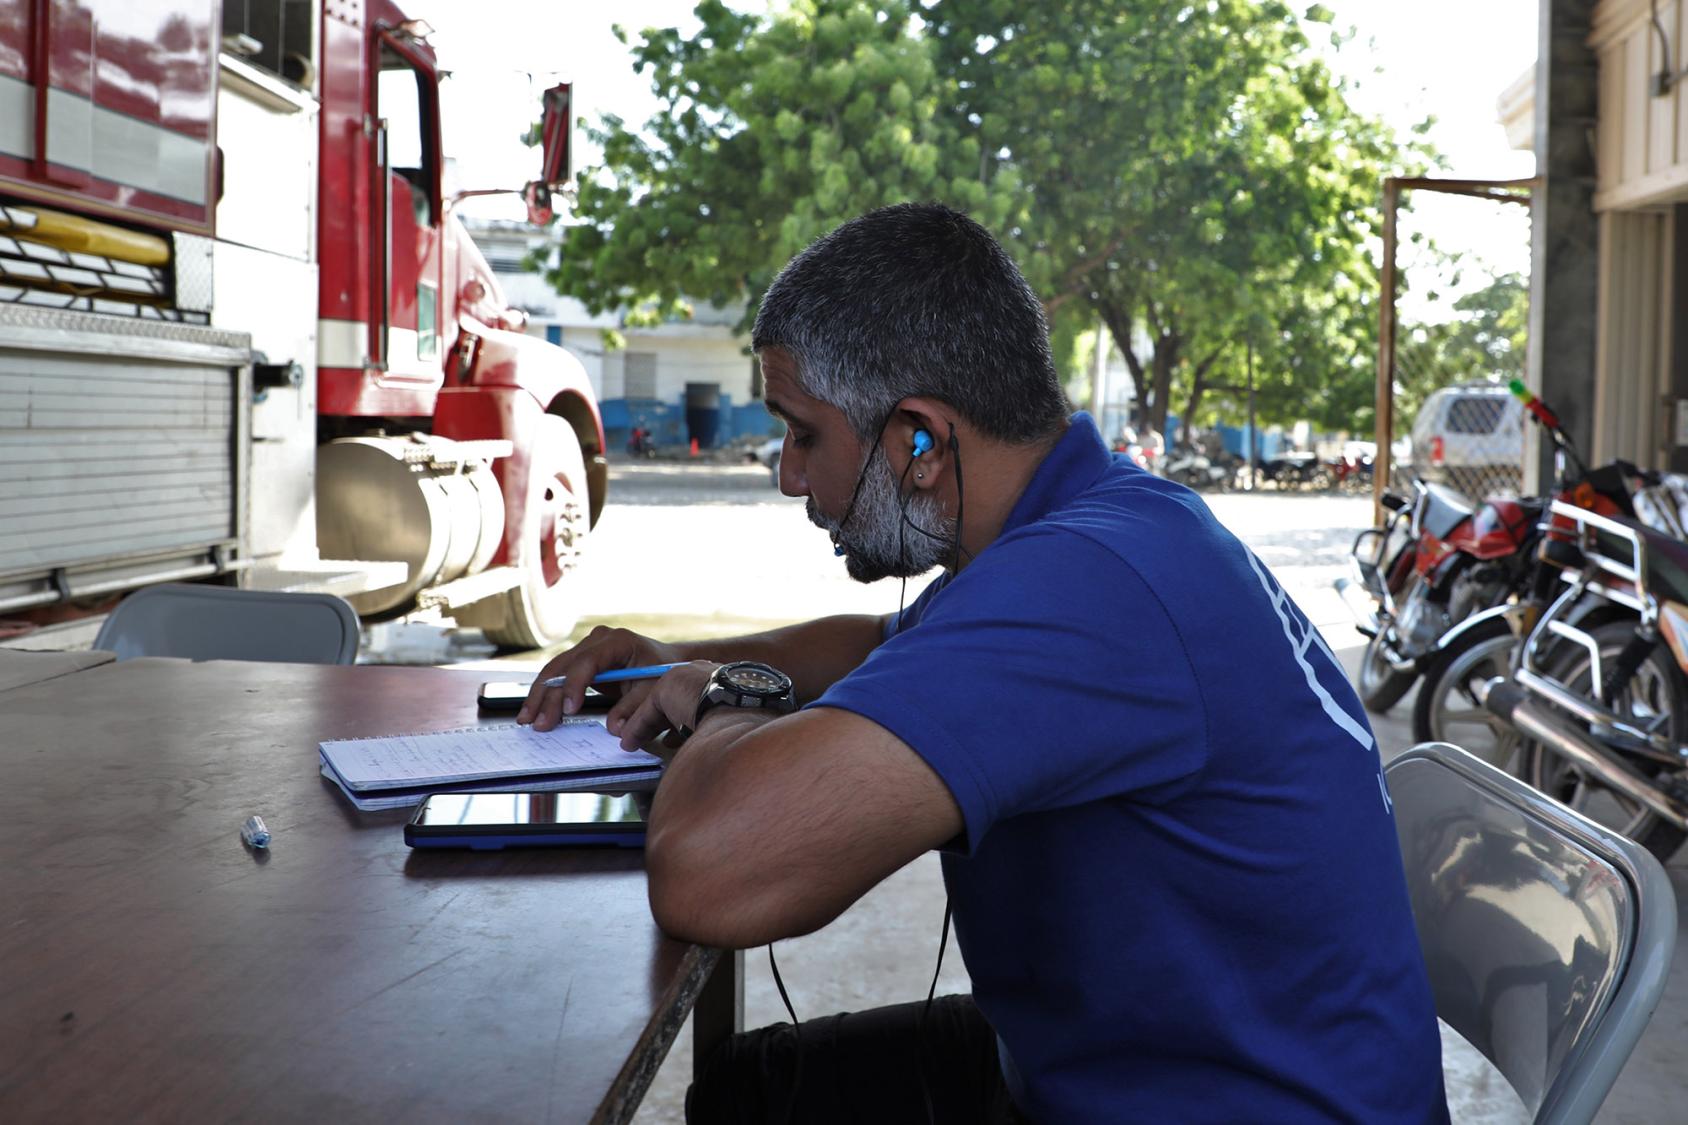 رجل يرتدي قميصًا أزرق ينظر إلى هاتف محمول وأوراق داخل محطة إطفاء.